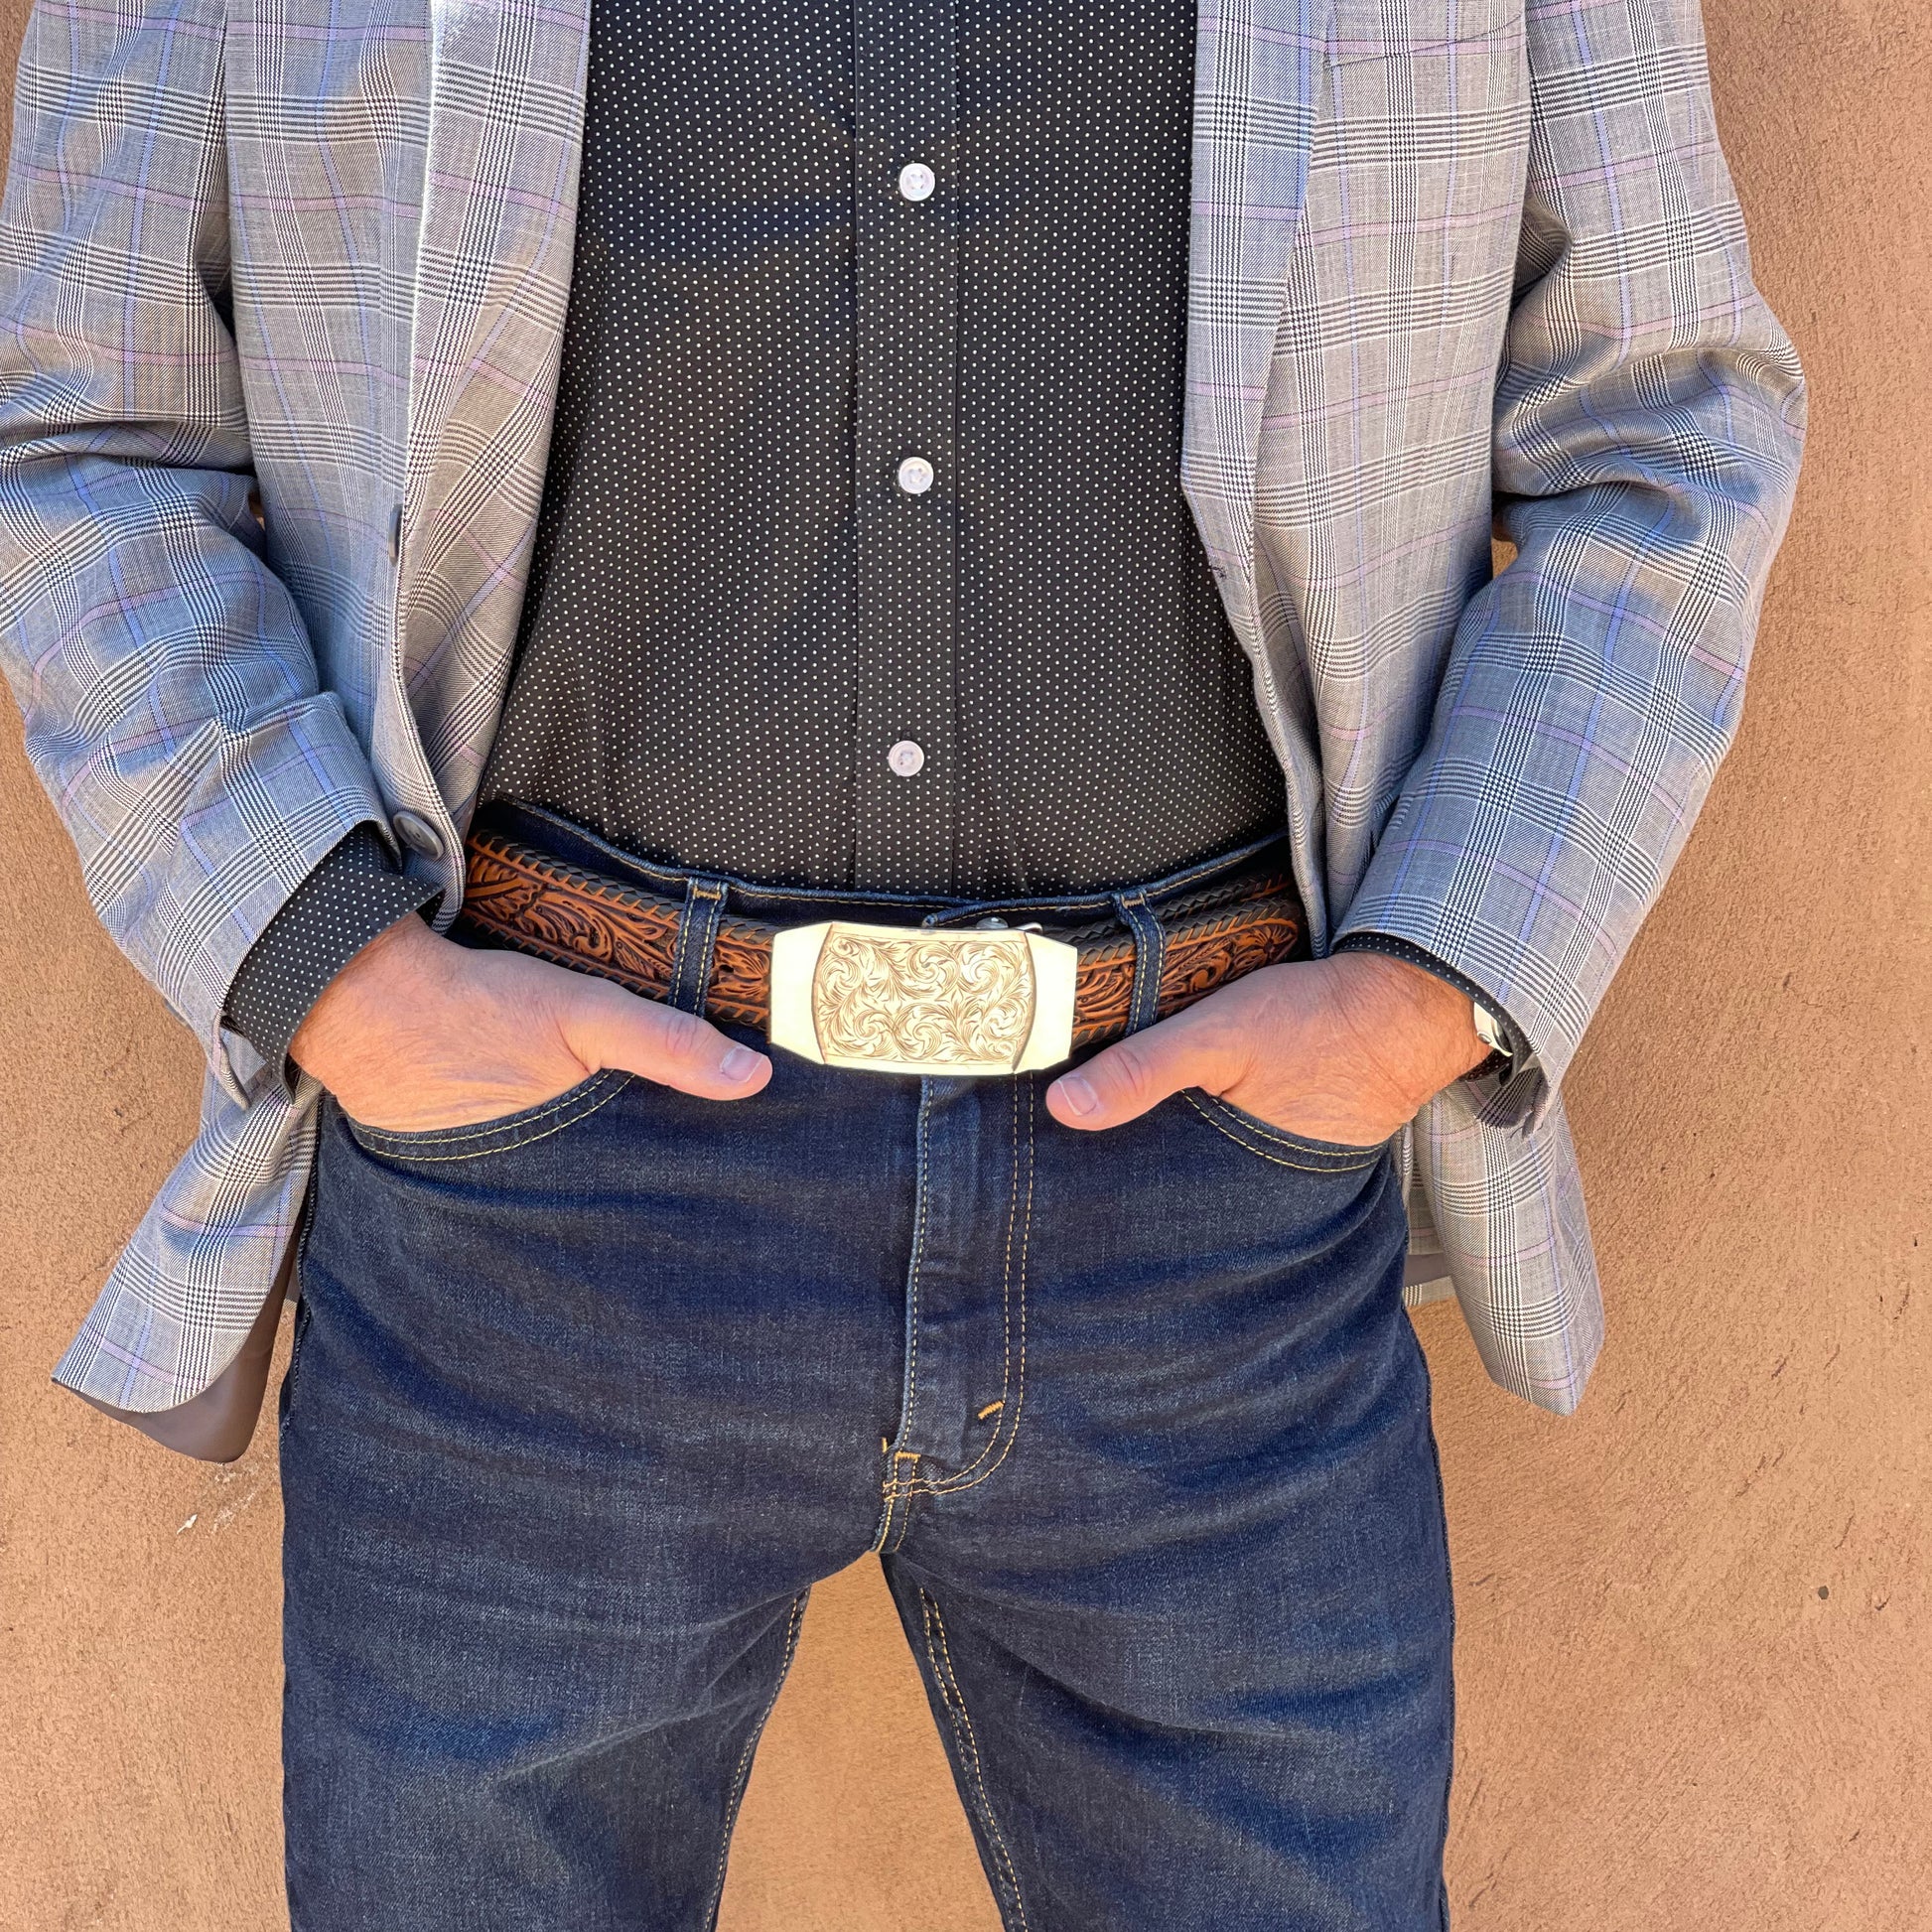 Waist view of man wearing Denver belt buckle.